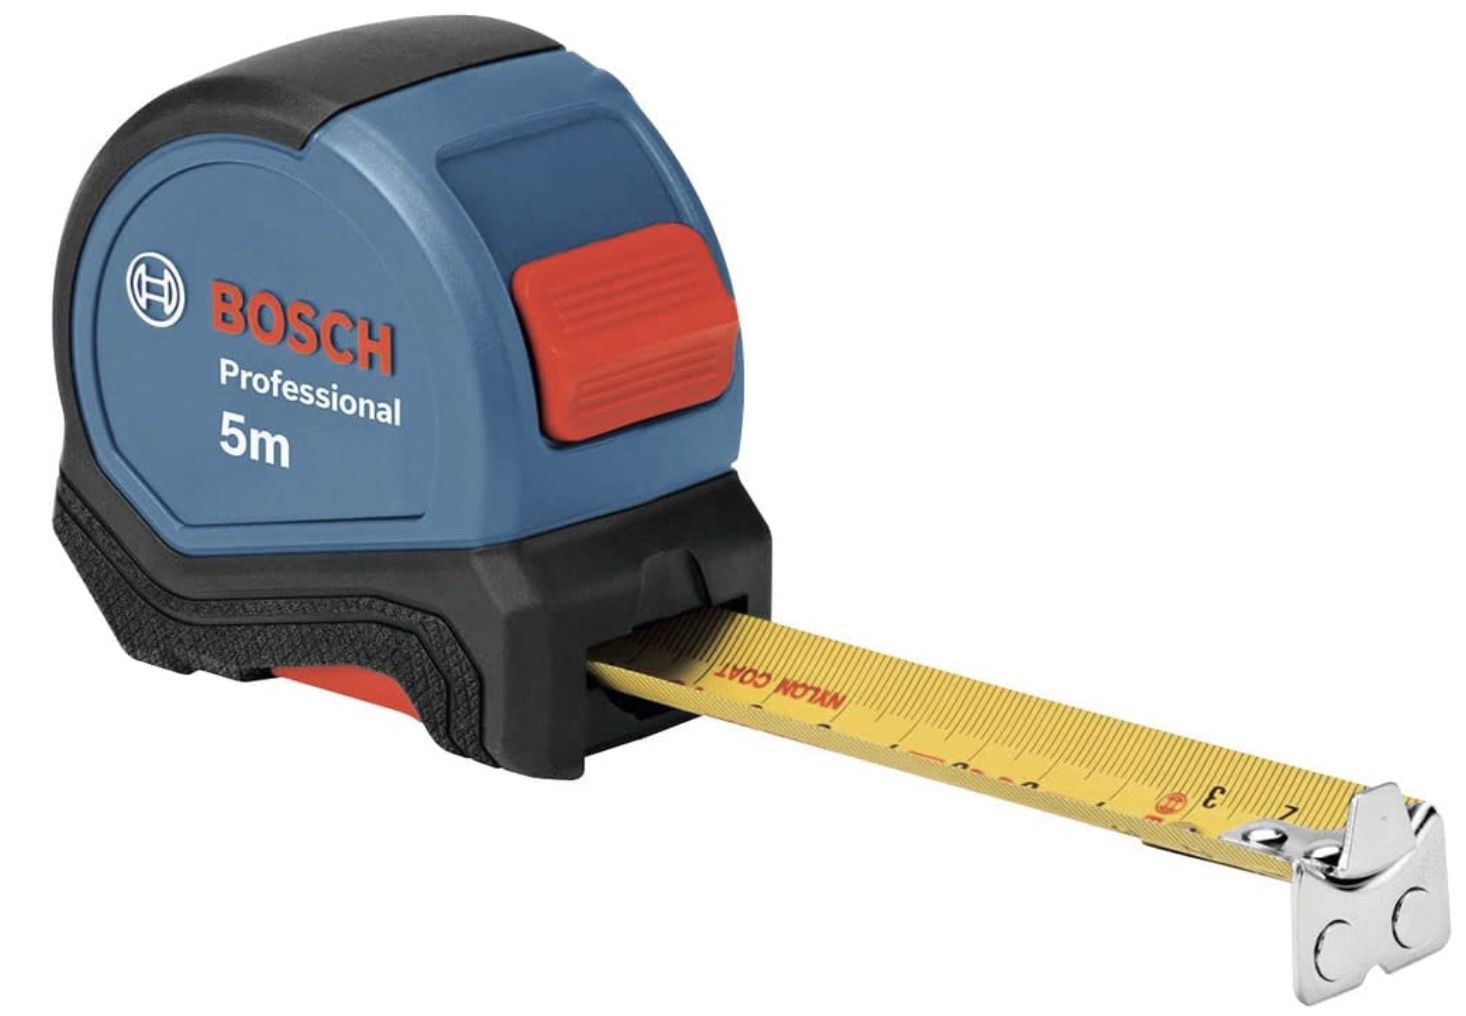 Bosch Professional 5m Maßband mit Magnethaken für 15,45€ (statt 21€)